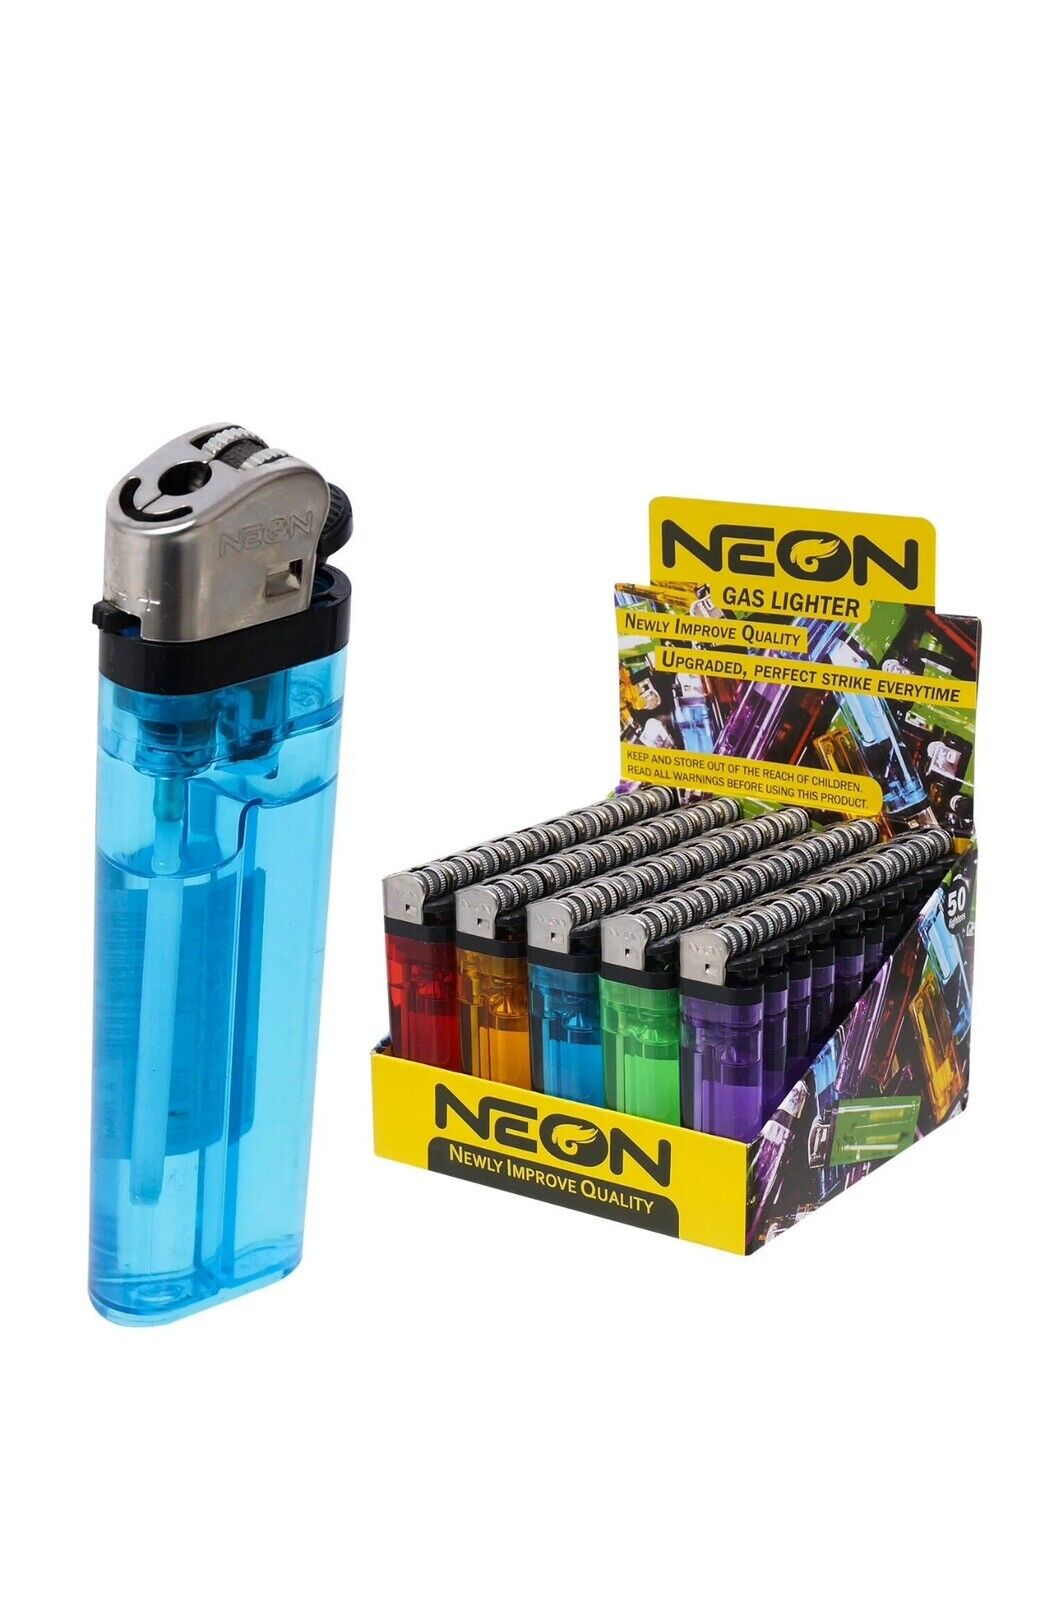 50 Neon Disposable Butane Cigarette Lighters Premium Quality  50 piece